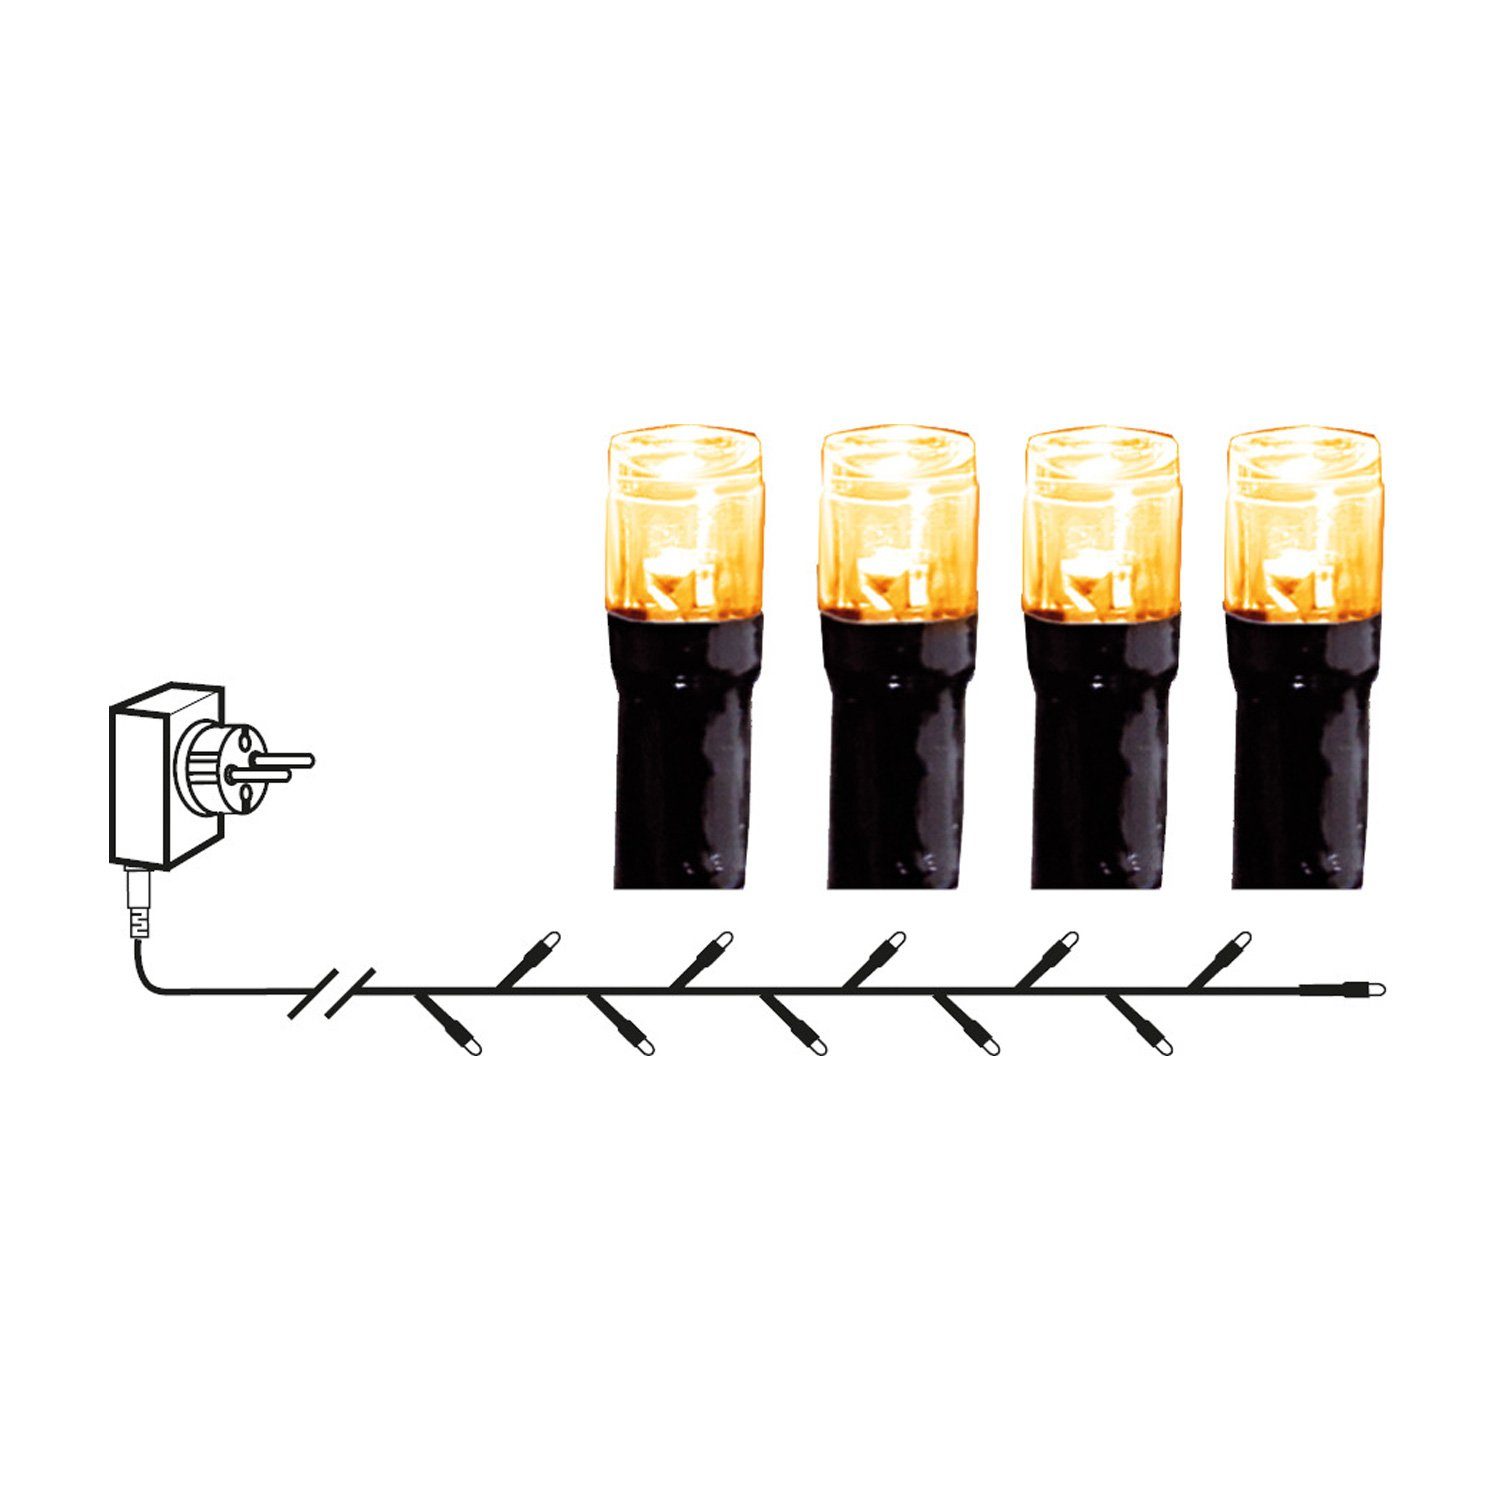 MARELIDA LED-Lichterkette LED Lichterkette Außen 40 gold IP44 bernstein 40-flammig warmweiße LED 2,8m